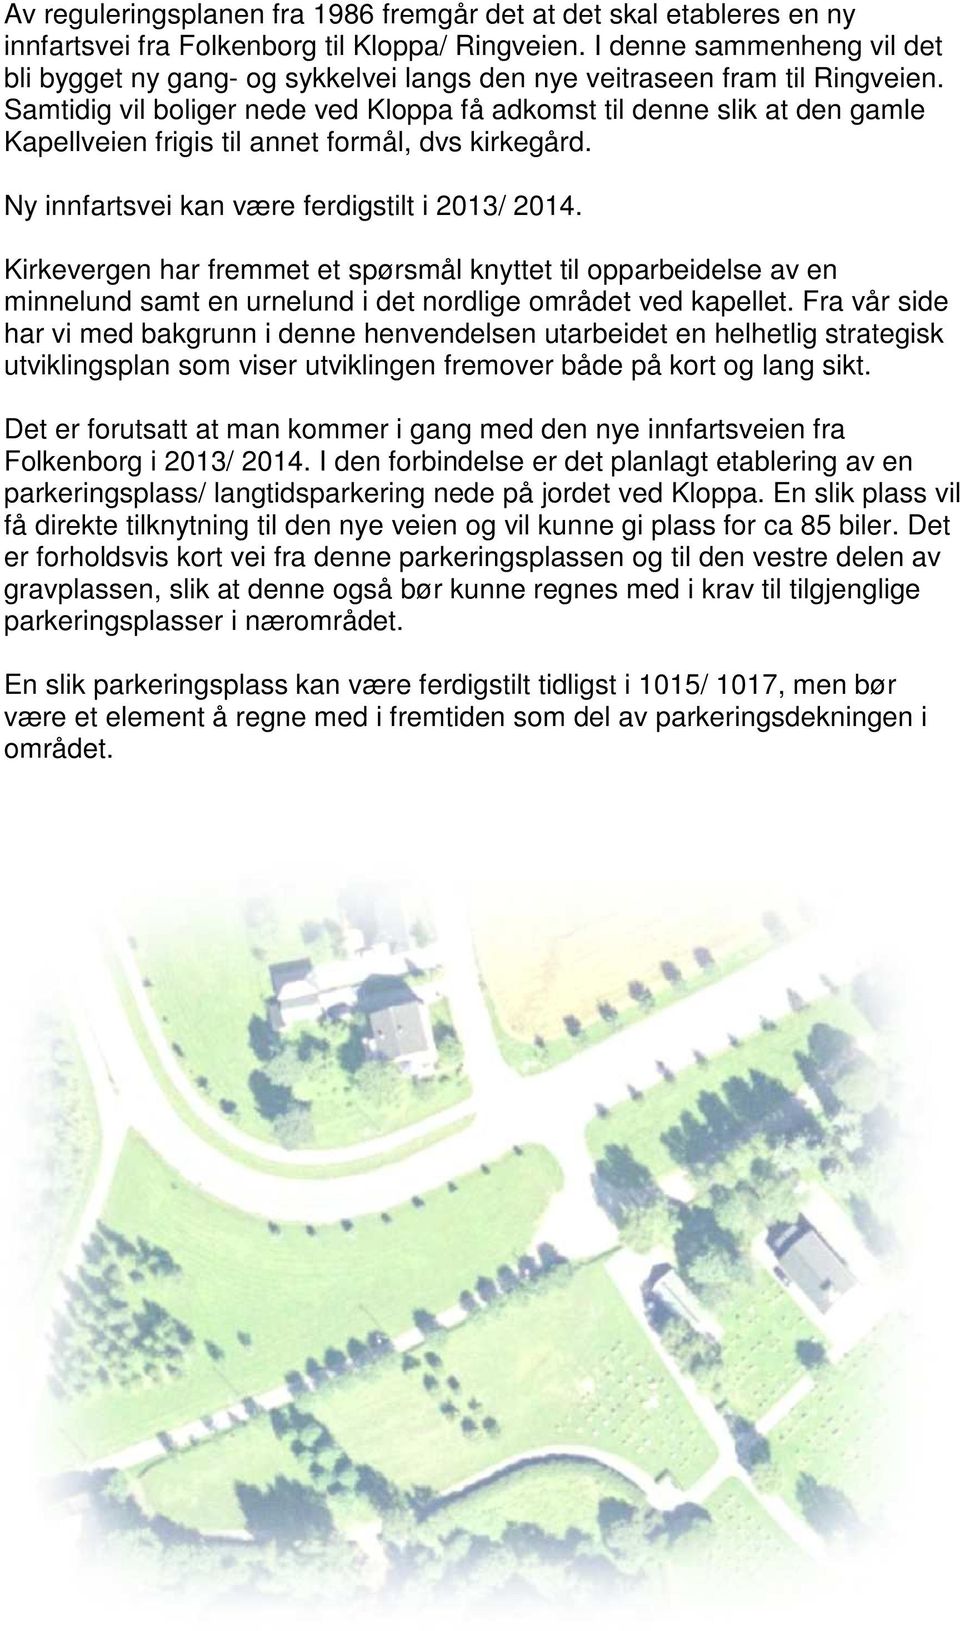 Samtidig vil boliger nede ved Kloppa få adkomst til denne slik at den gamle Kapellveien frigis til annet formål, dvs kirkegård. Ny innfartsvei kan være ferdigstilt i 2013/ 2014.